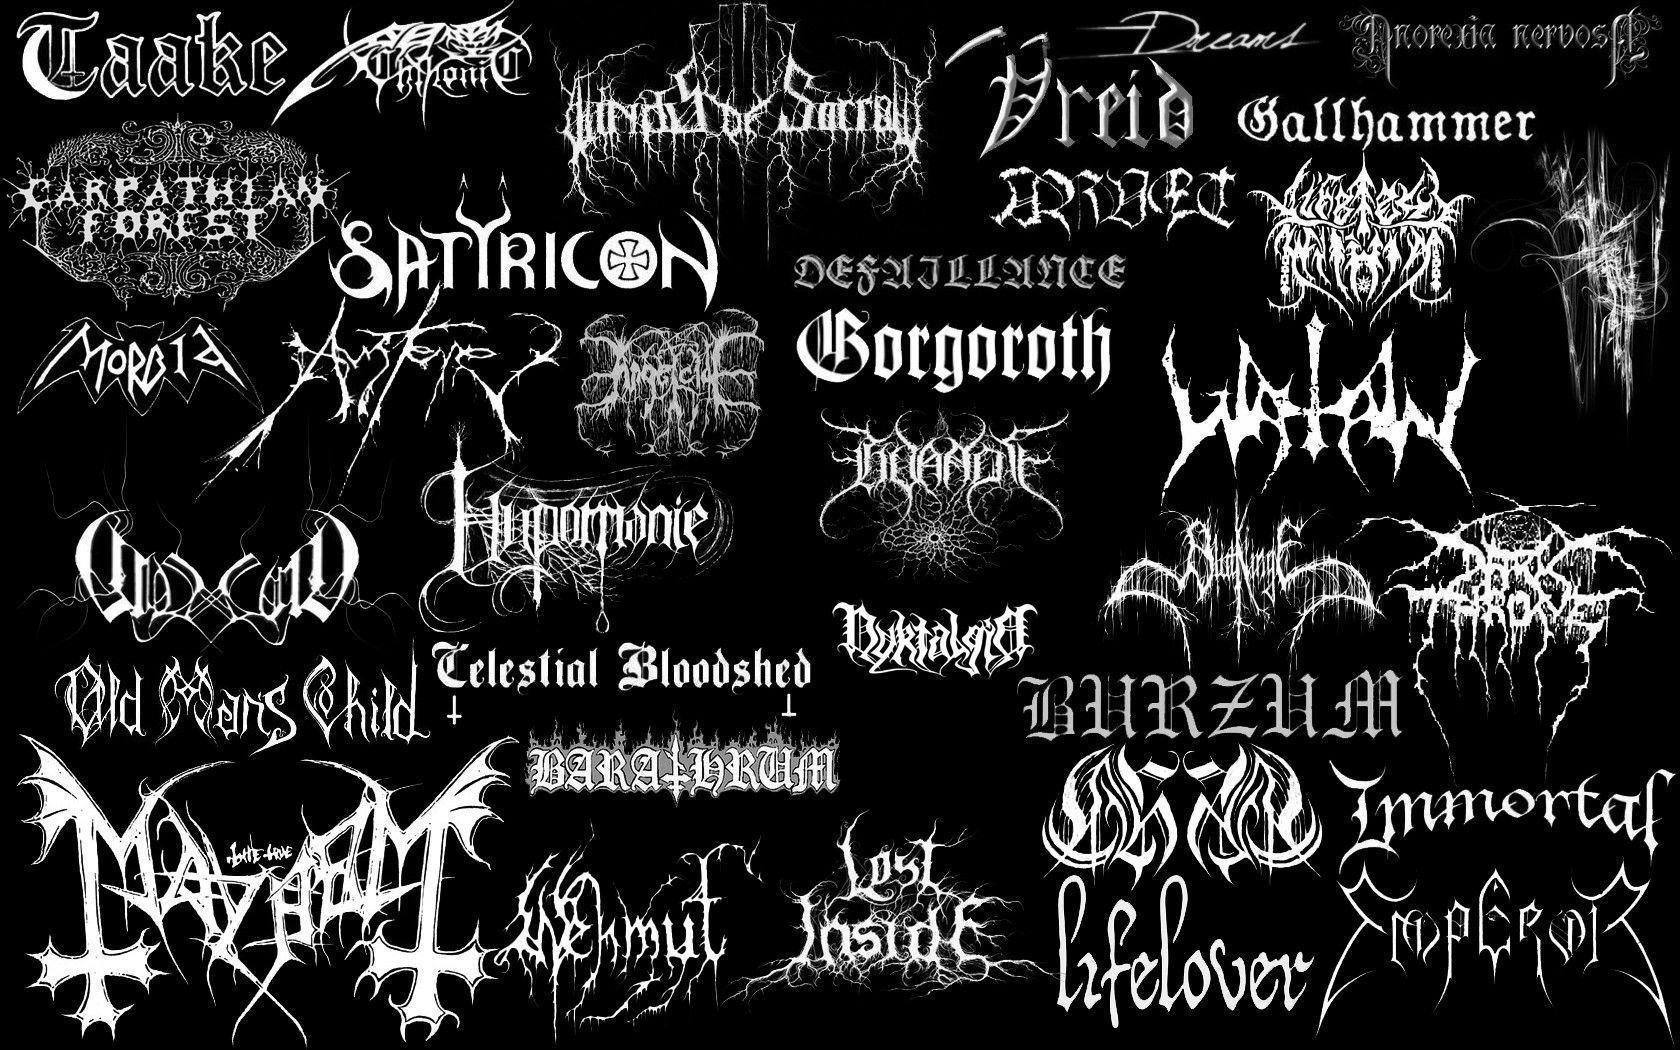 black metal bands background